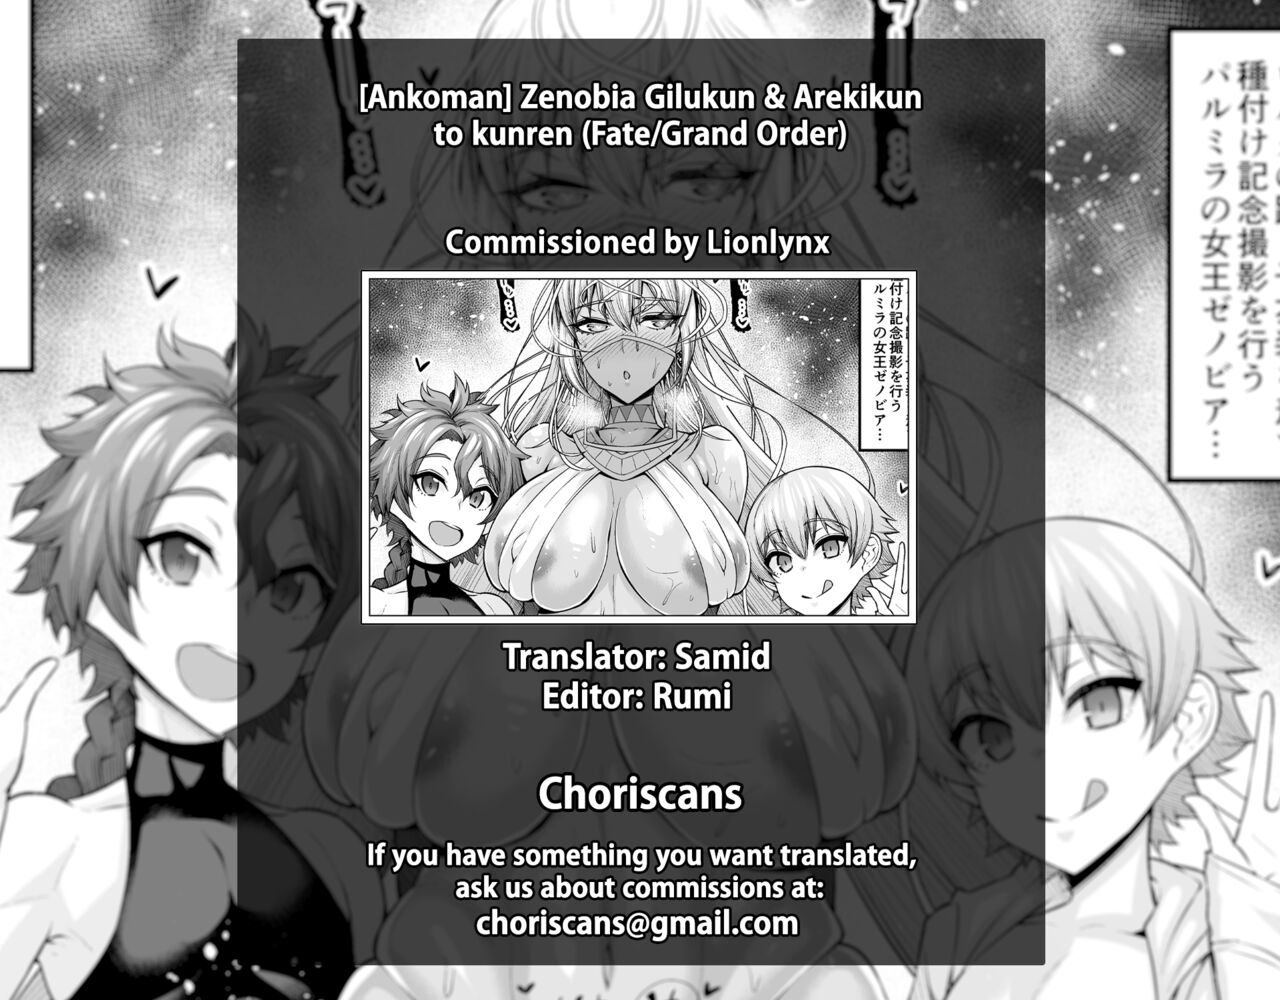 [あんこまん] ゼノビア、王2人と訓練をする (Fate/Grand Order) [英訳]